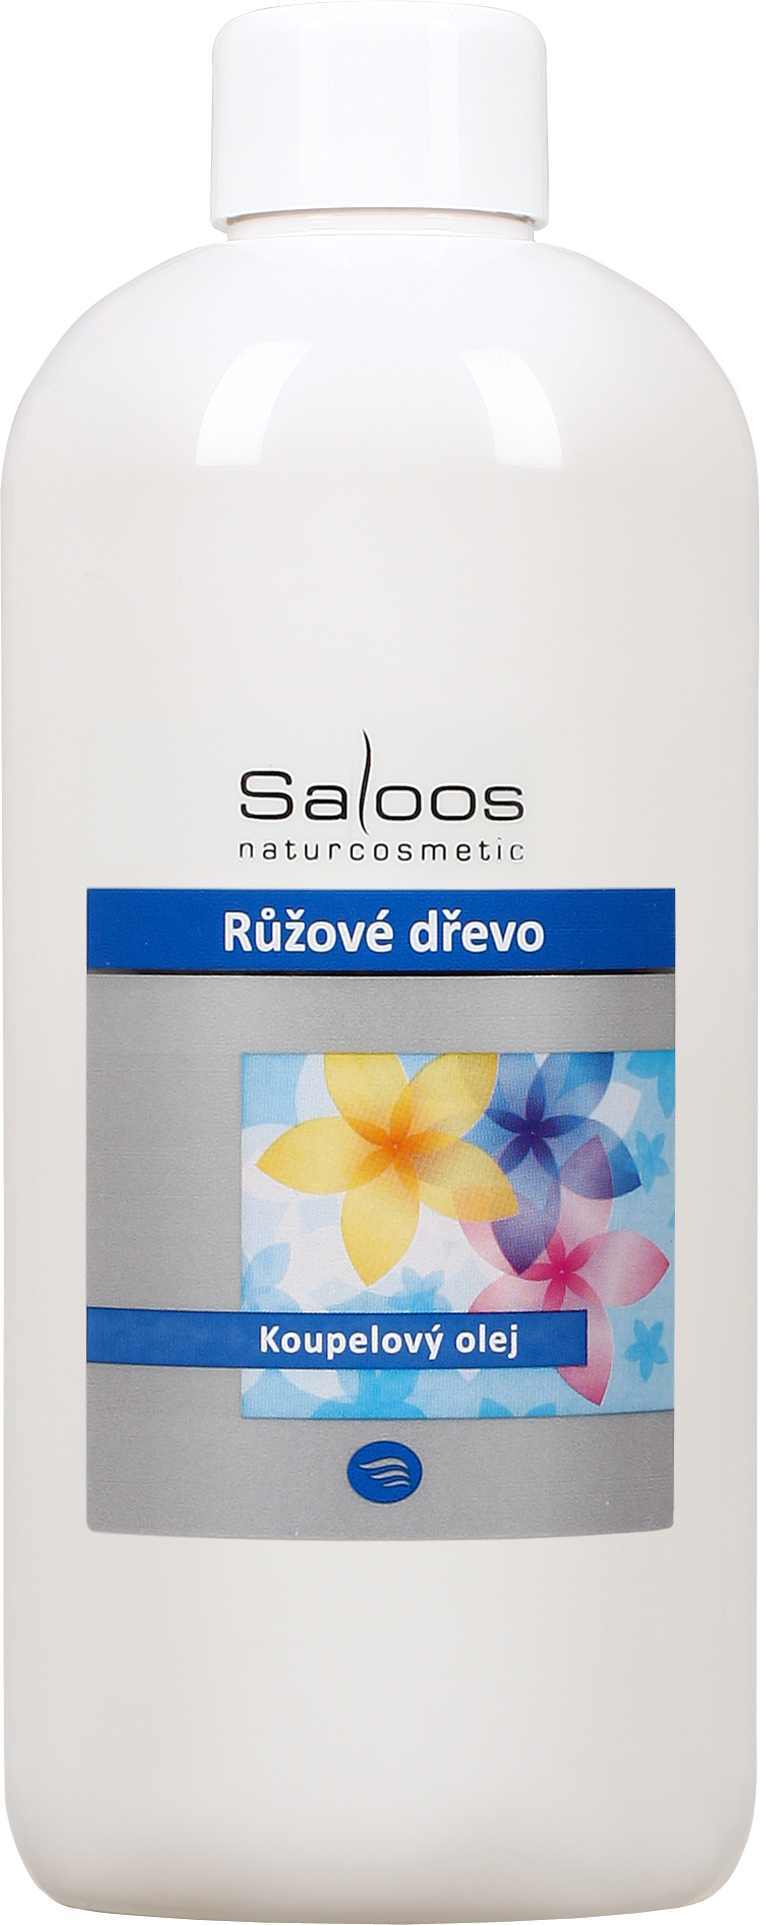 Saloos Růžové dřevo - koupelový olej Balení: 250 ml